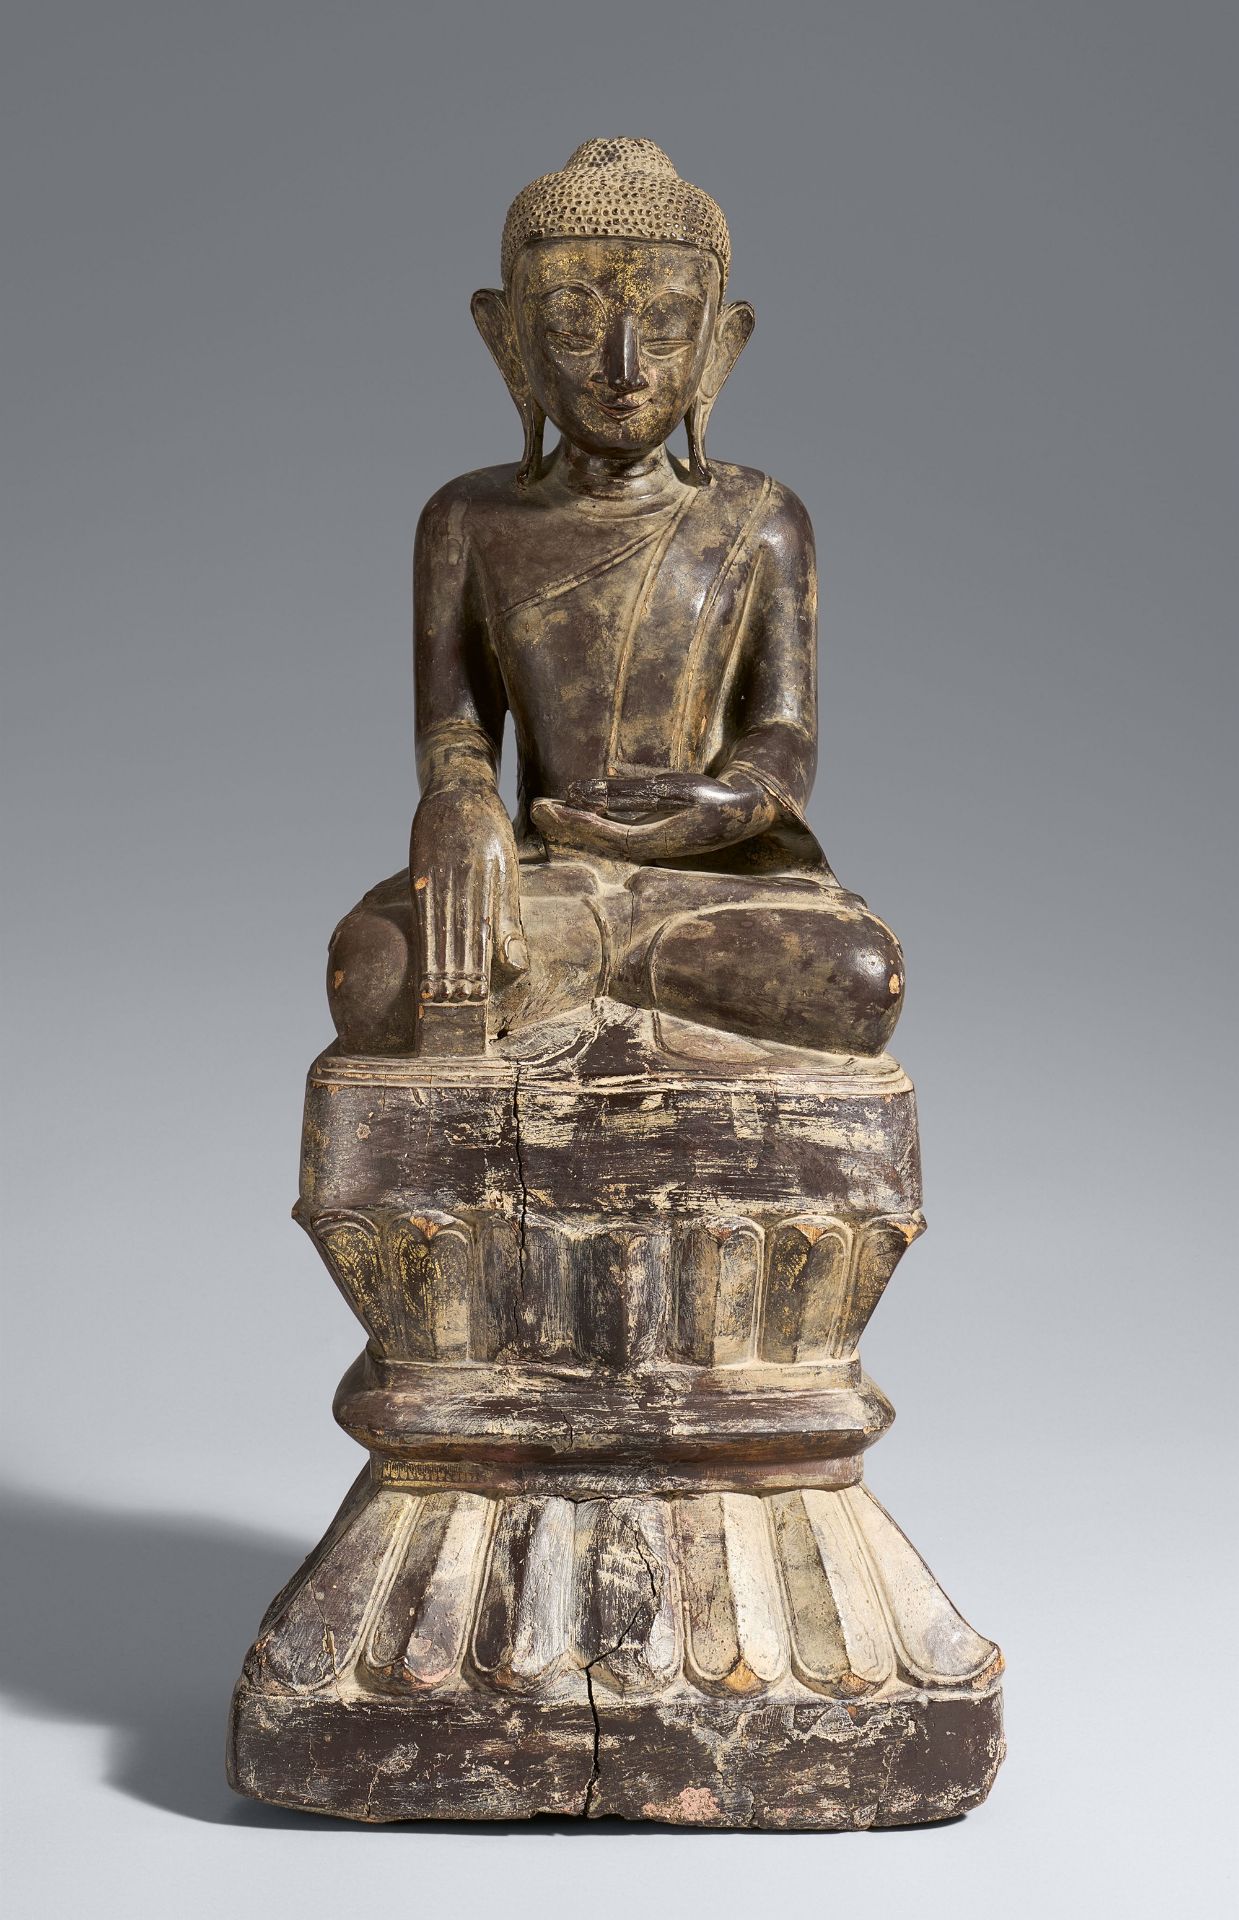 Buddha Shakyamuni. Holz. Birma, Shan-Staaten. 19. Jh.